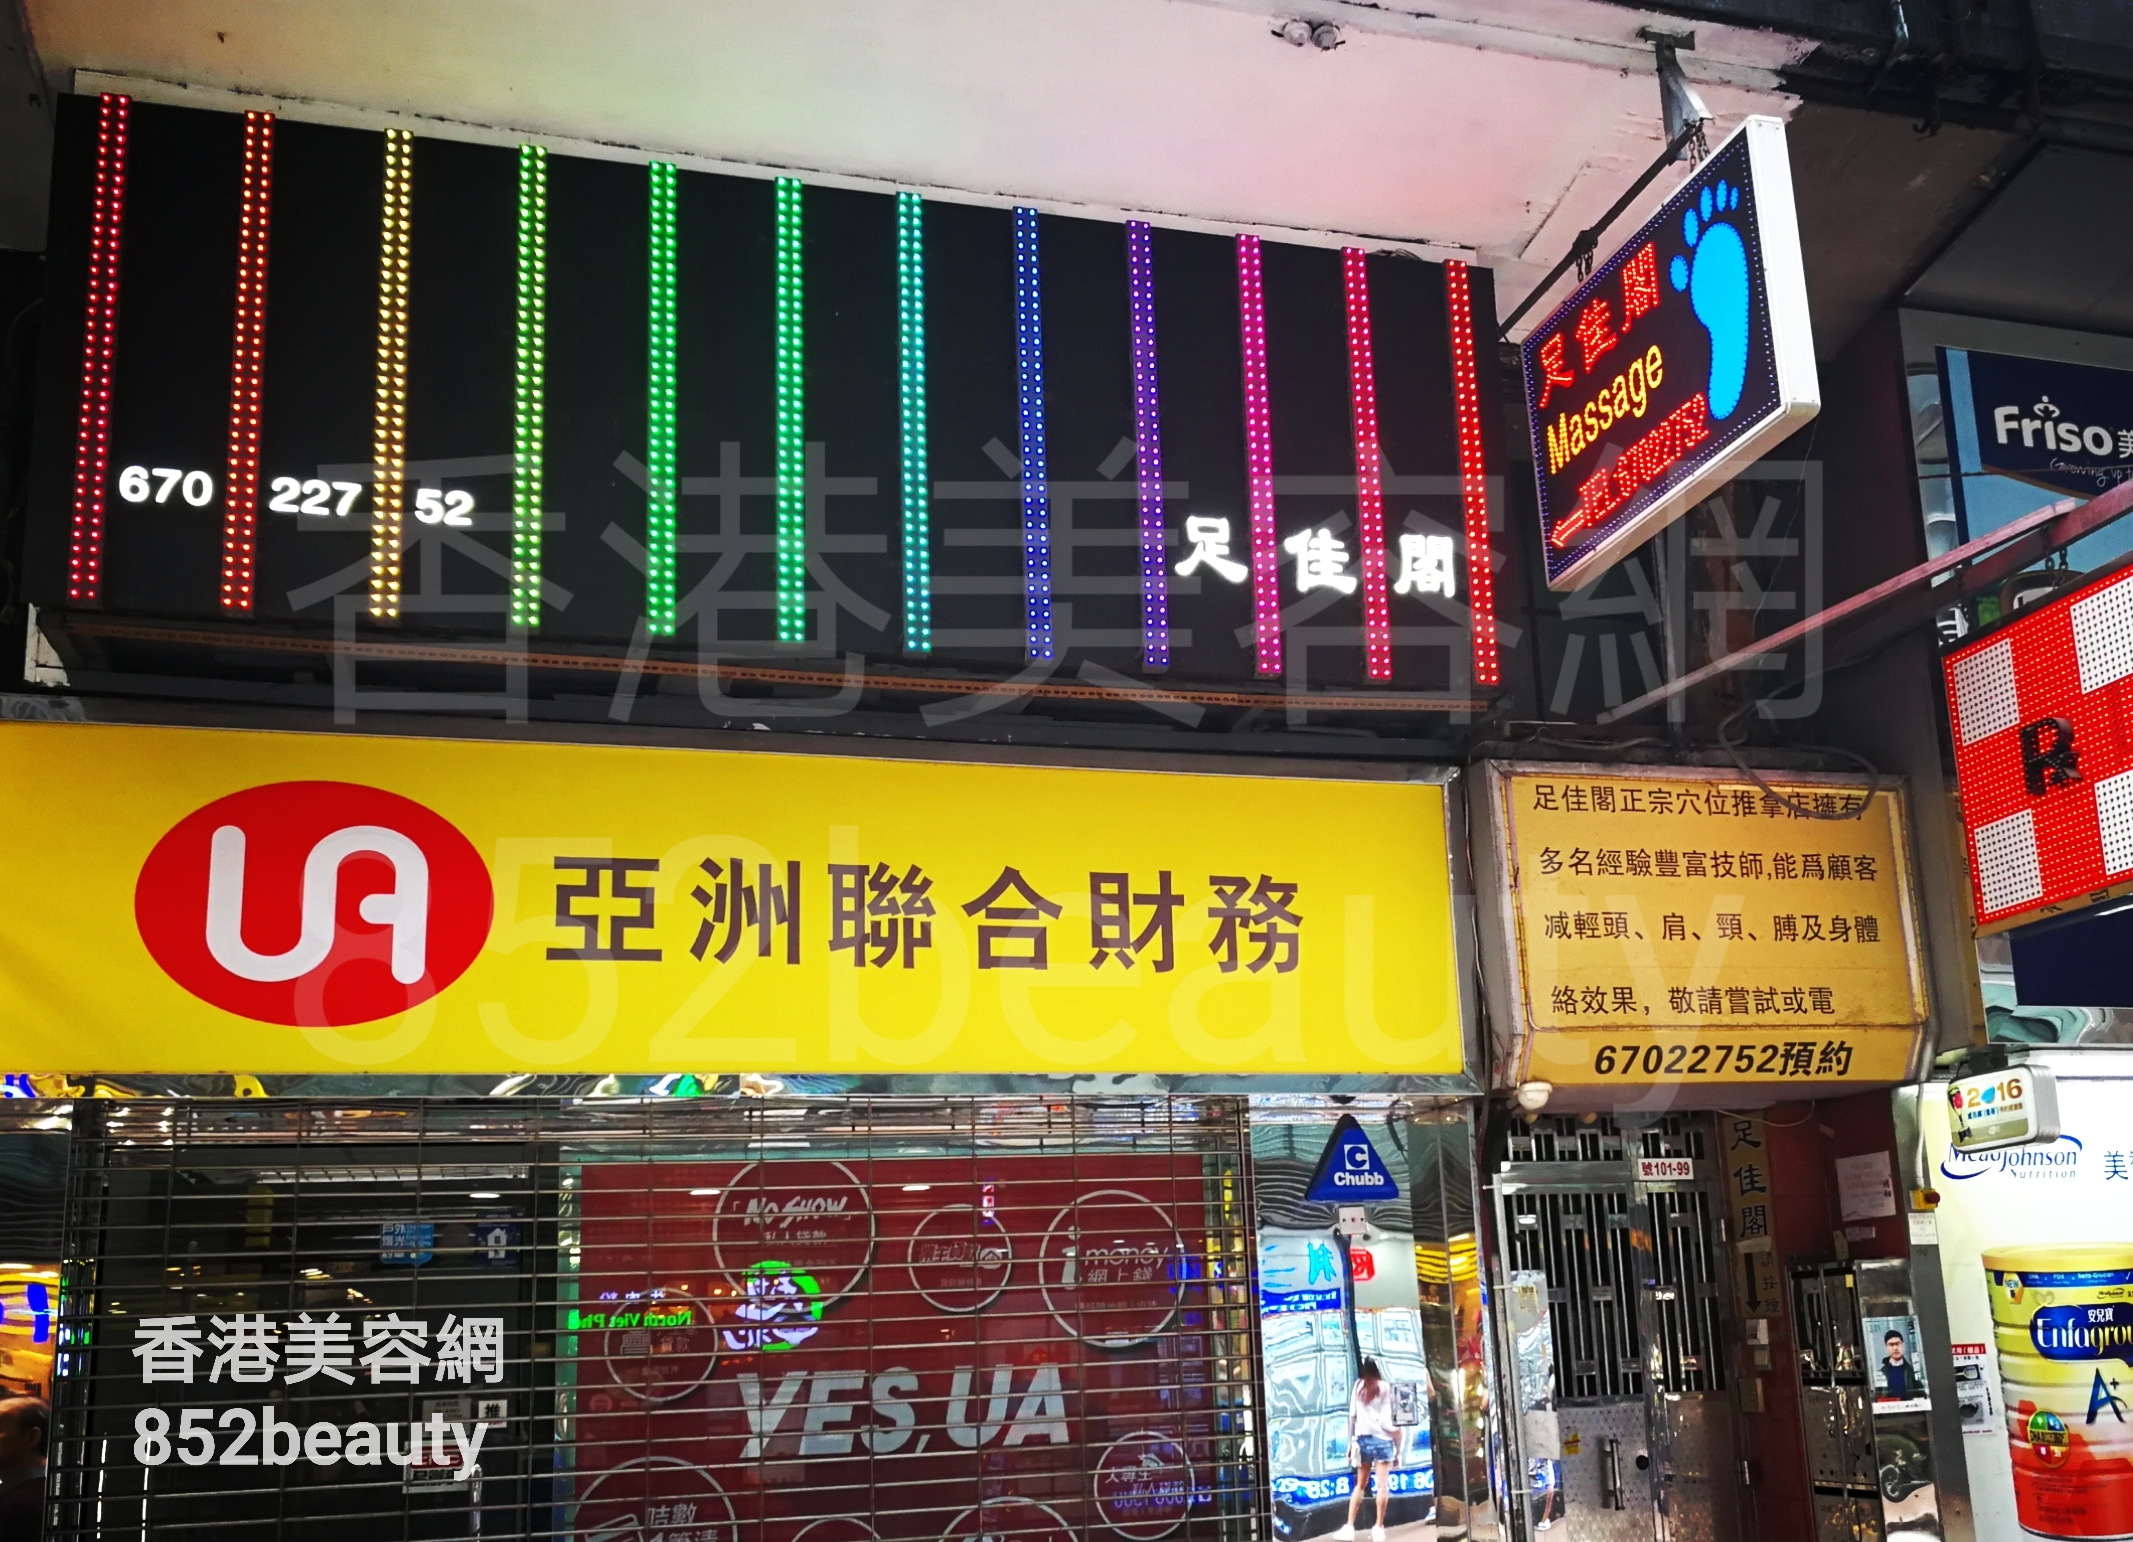 香港美容網 Hong Kong Beauty Salon 美容院 / 美容師: 足佳閣